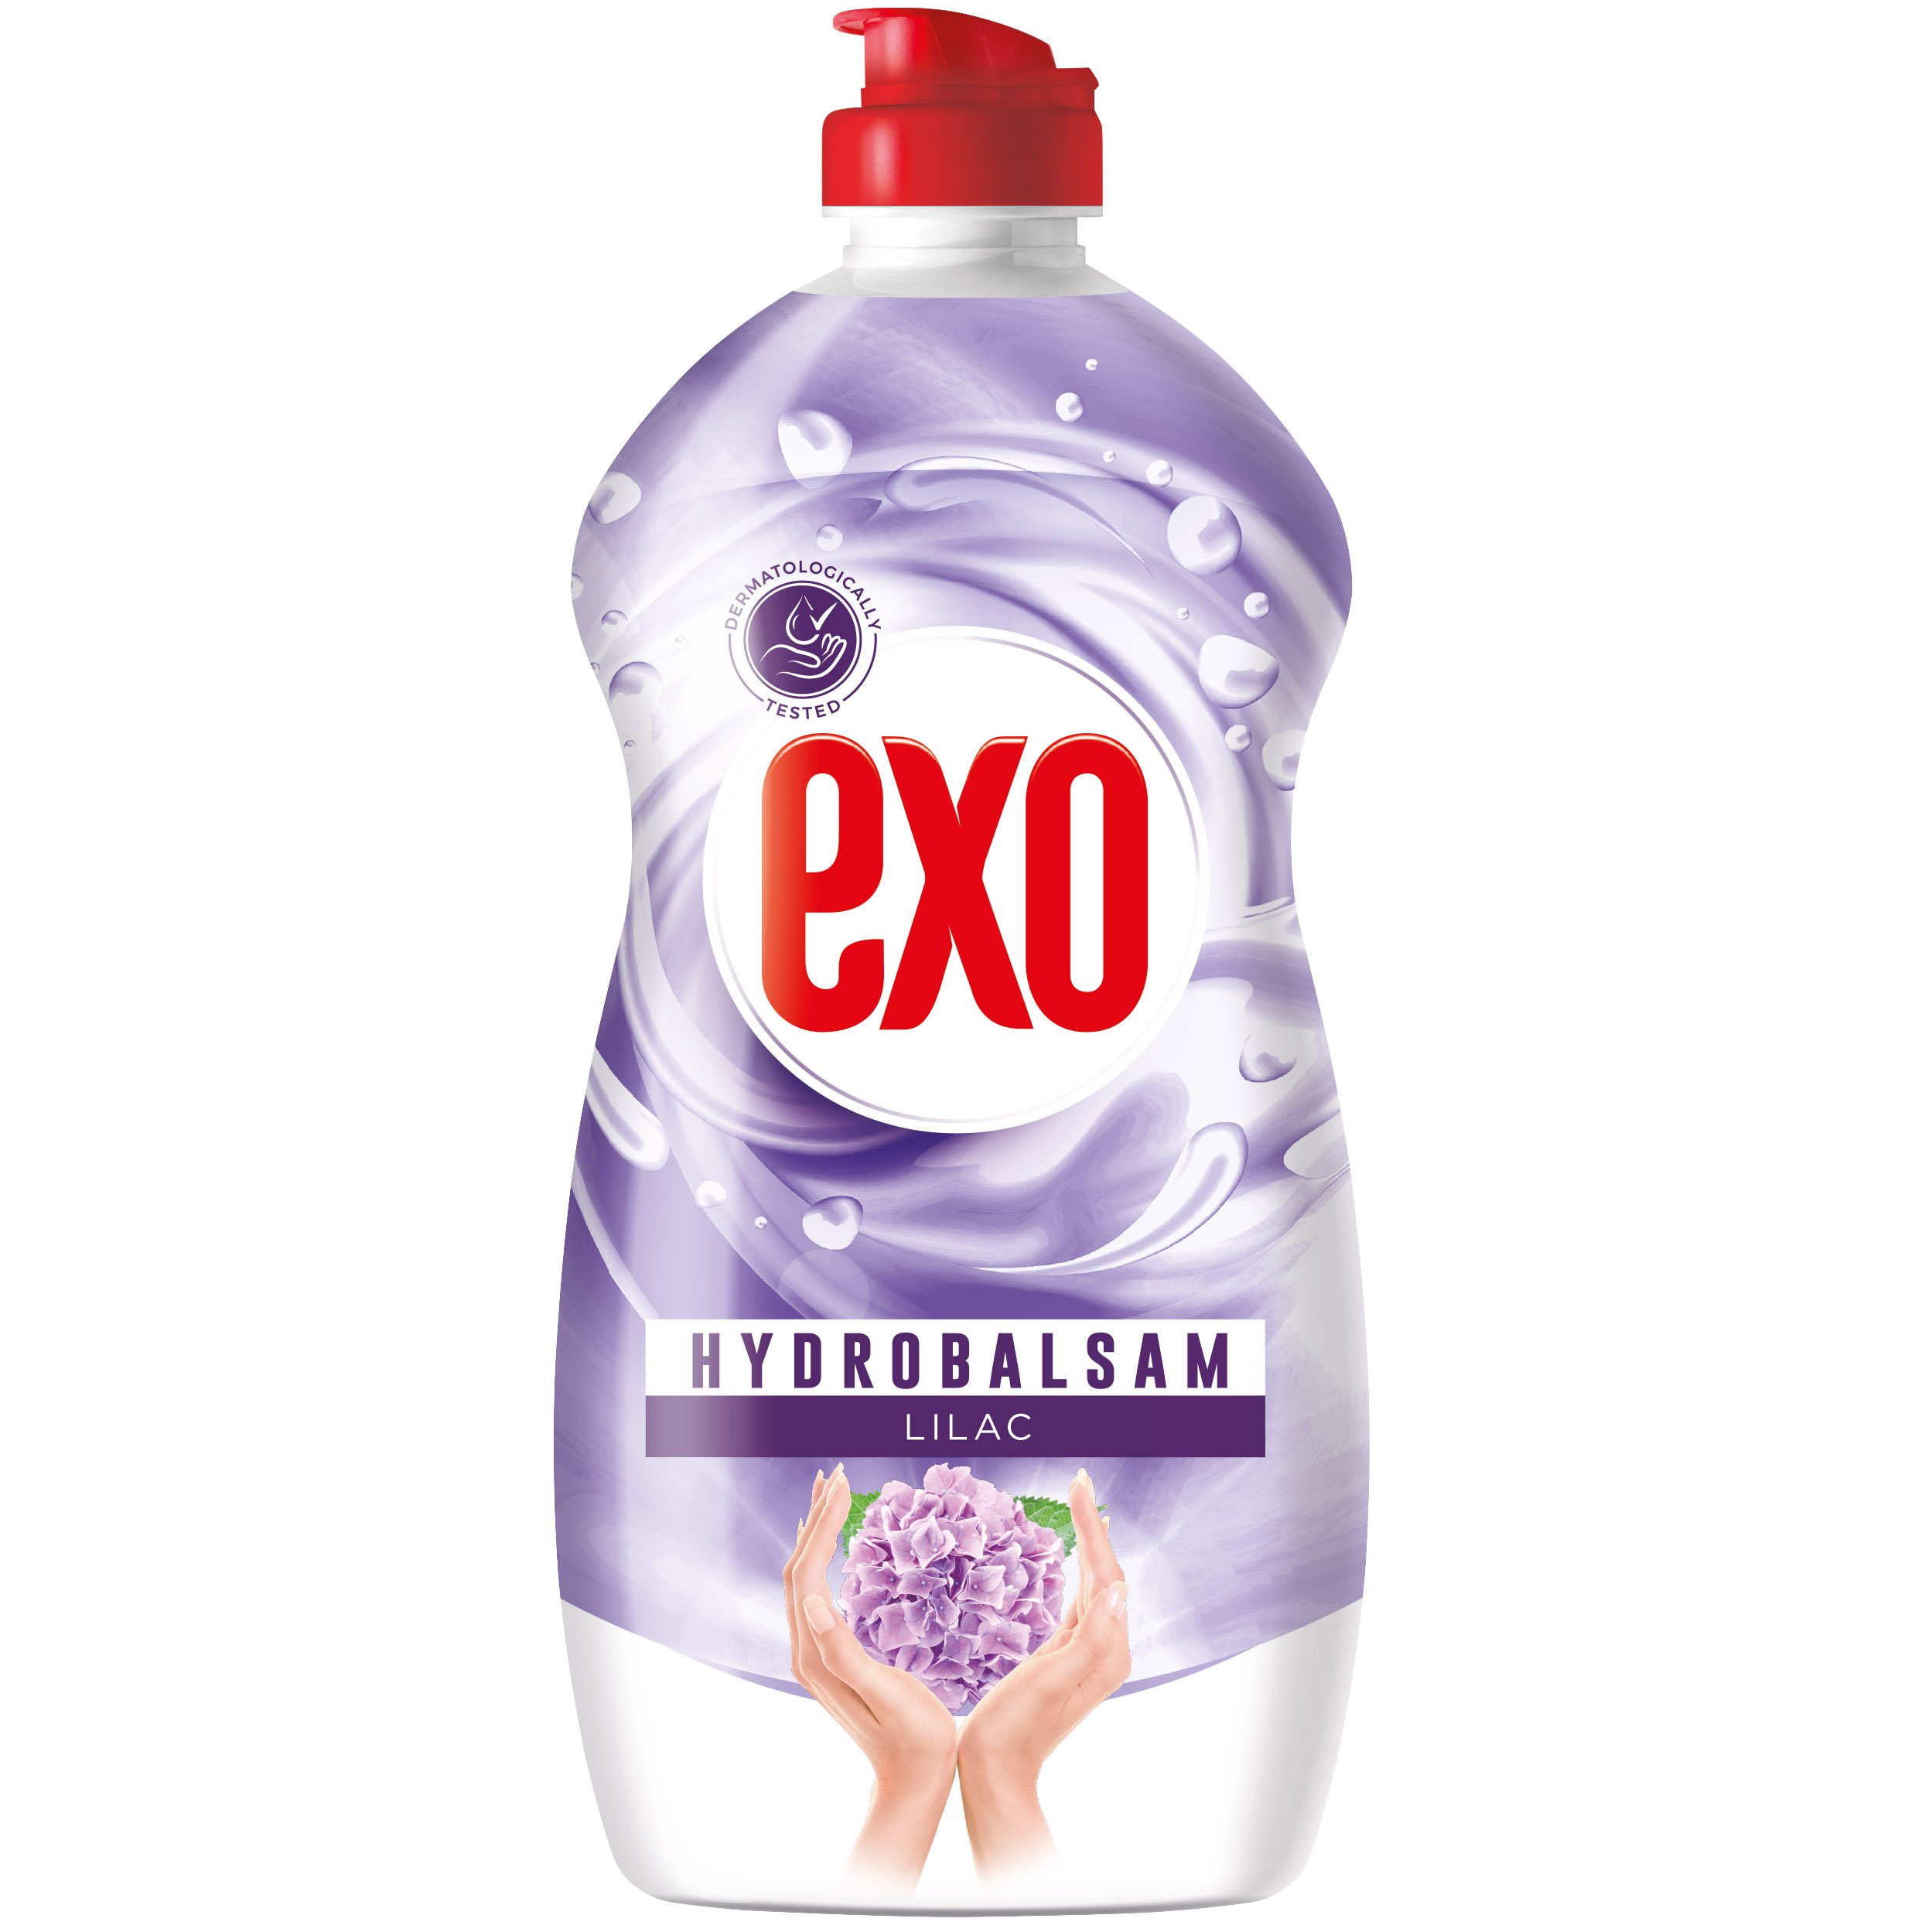 Photos - Dish Soap EXO Засіб для миття посуду  Hydrobalsam Lilac 400 мл 